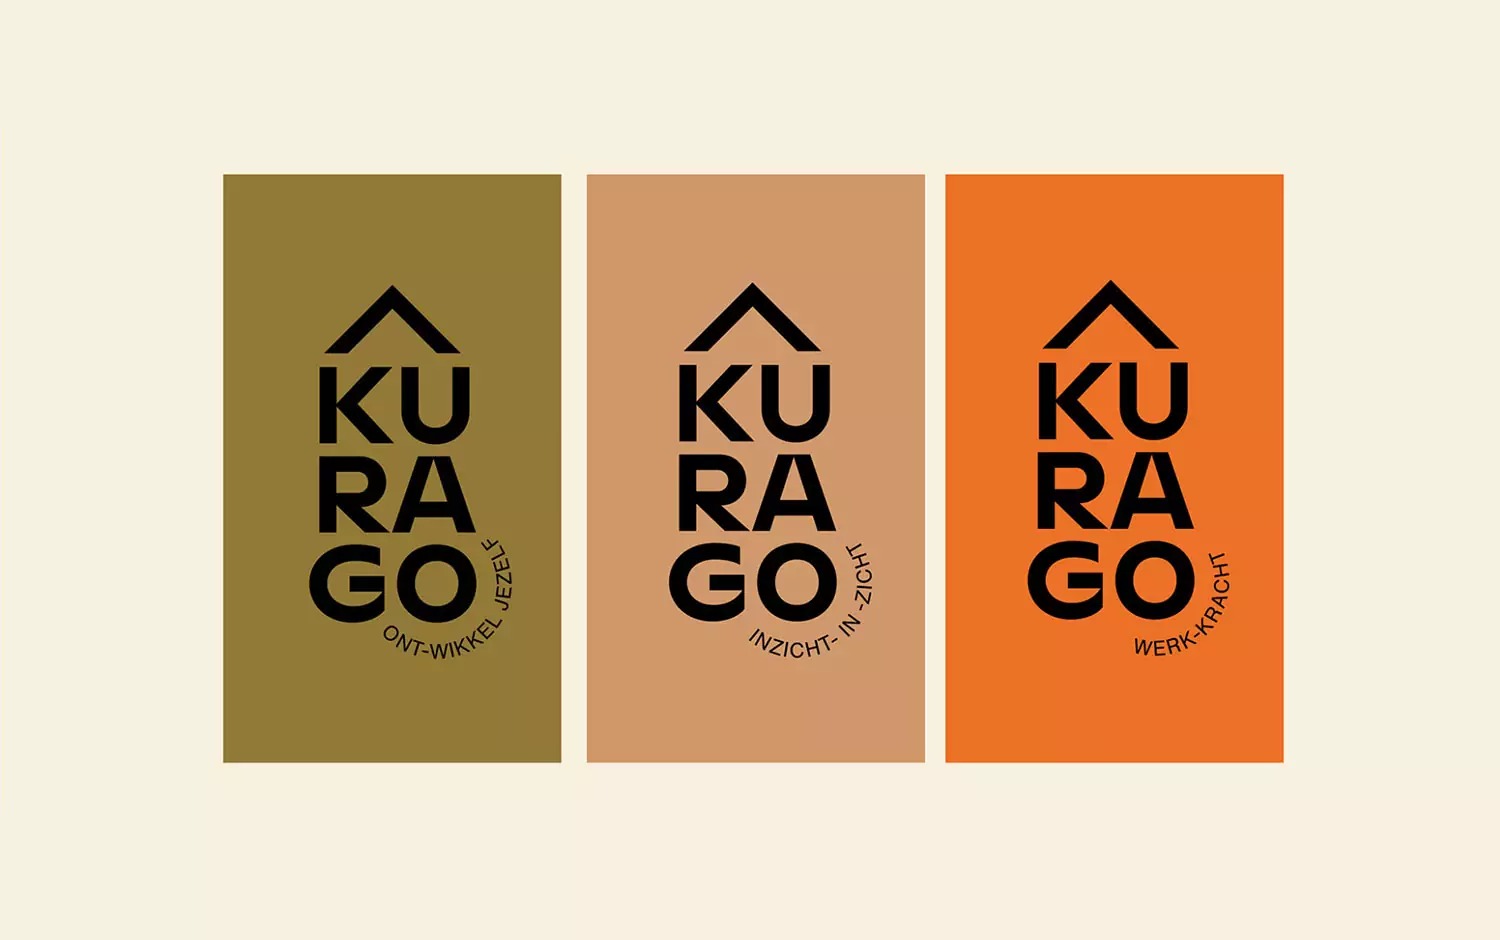 Kurago心理治疗中心品牌形象设计